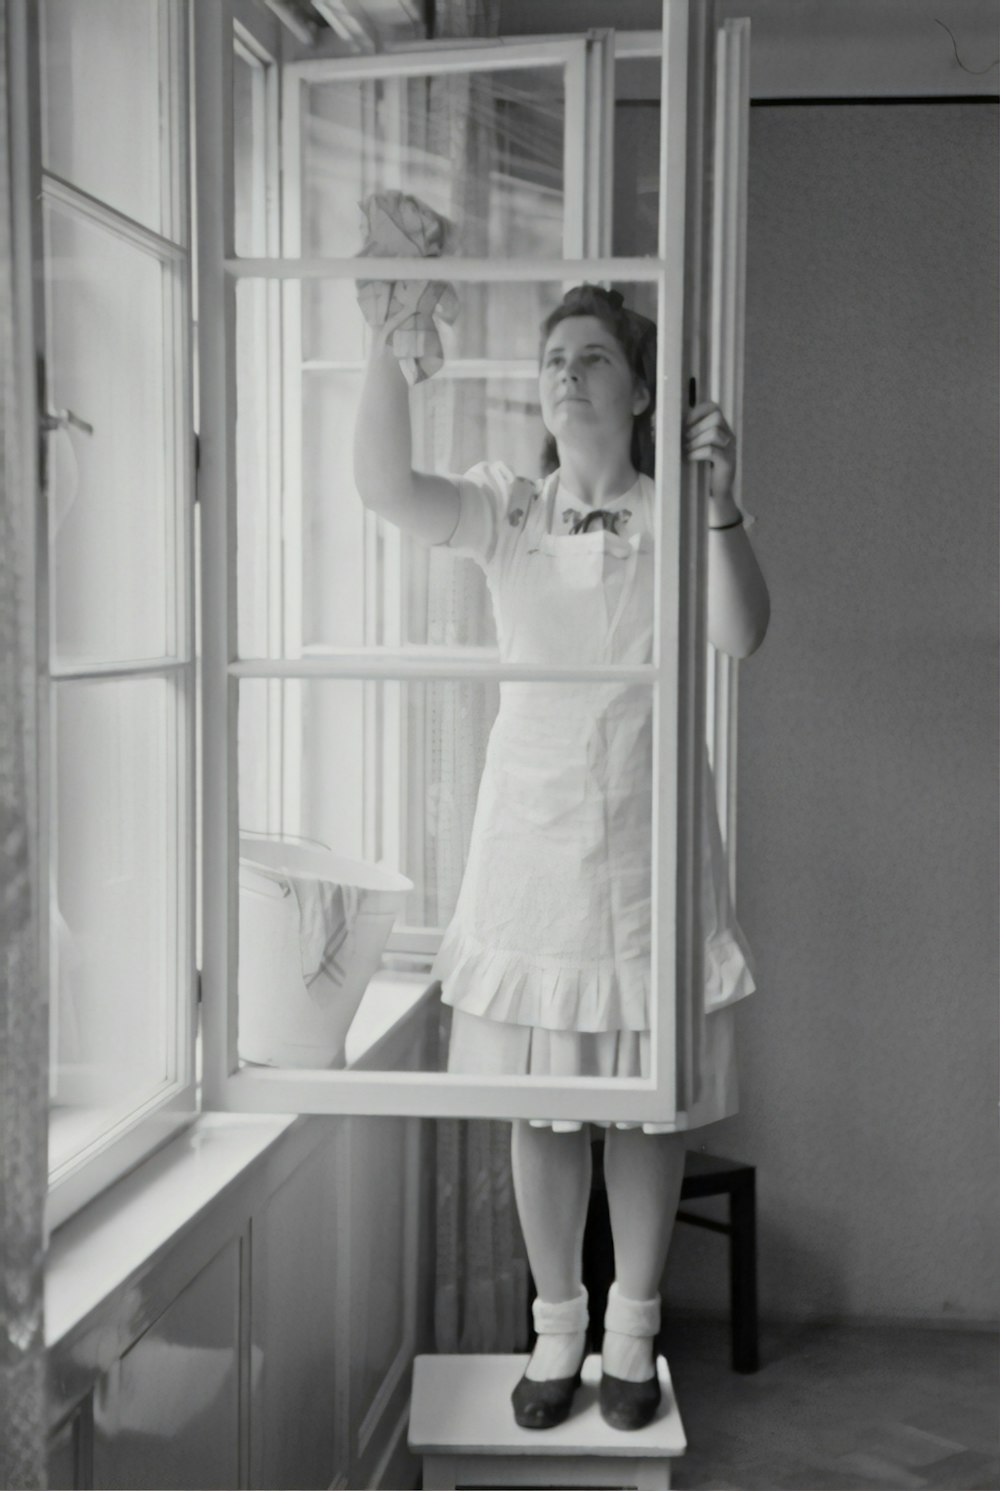 fotografia em escala de cinza da mulher que limpa a janela de vidro